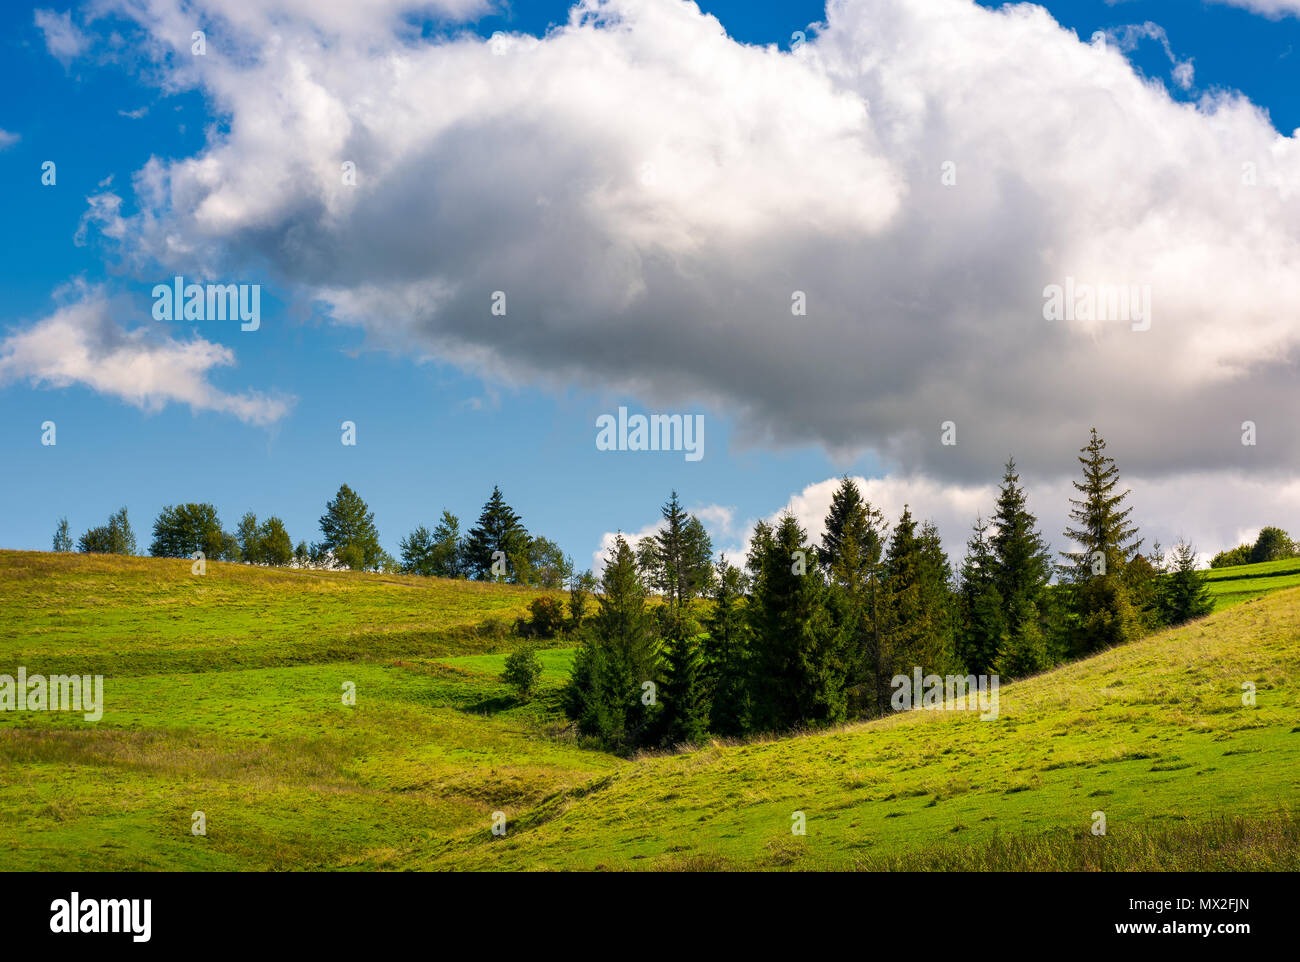 Spruce woodlot en una ladera de hierba. precioso escenario natural. El cielo azul con nubes esponjosas enorme Foto de stock